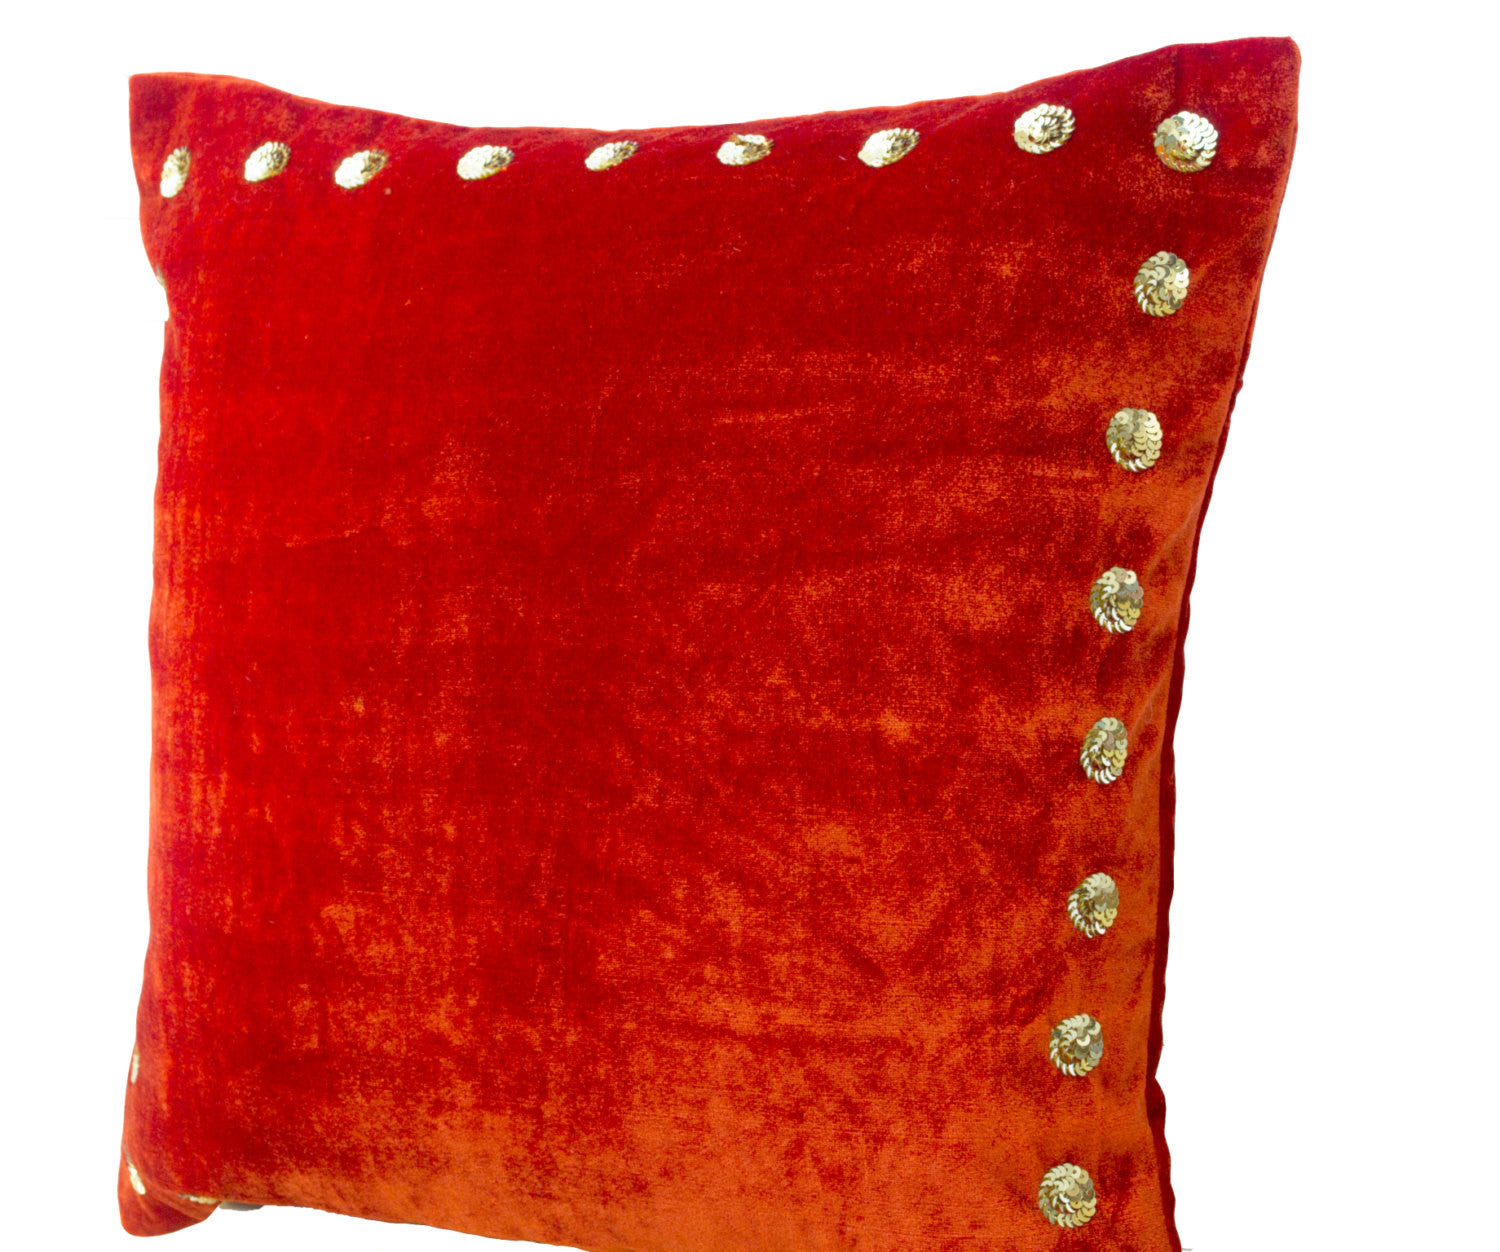 Handmade orange velvet throw pillow with gold sequin